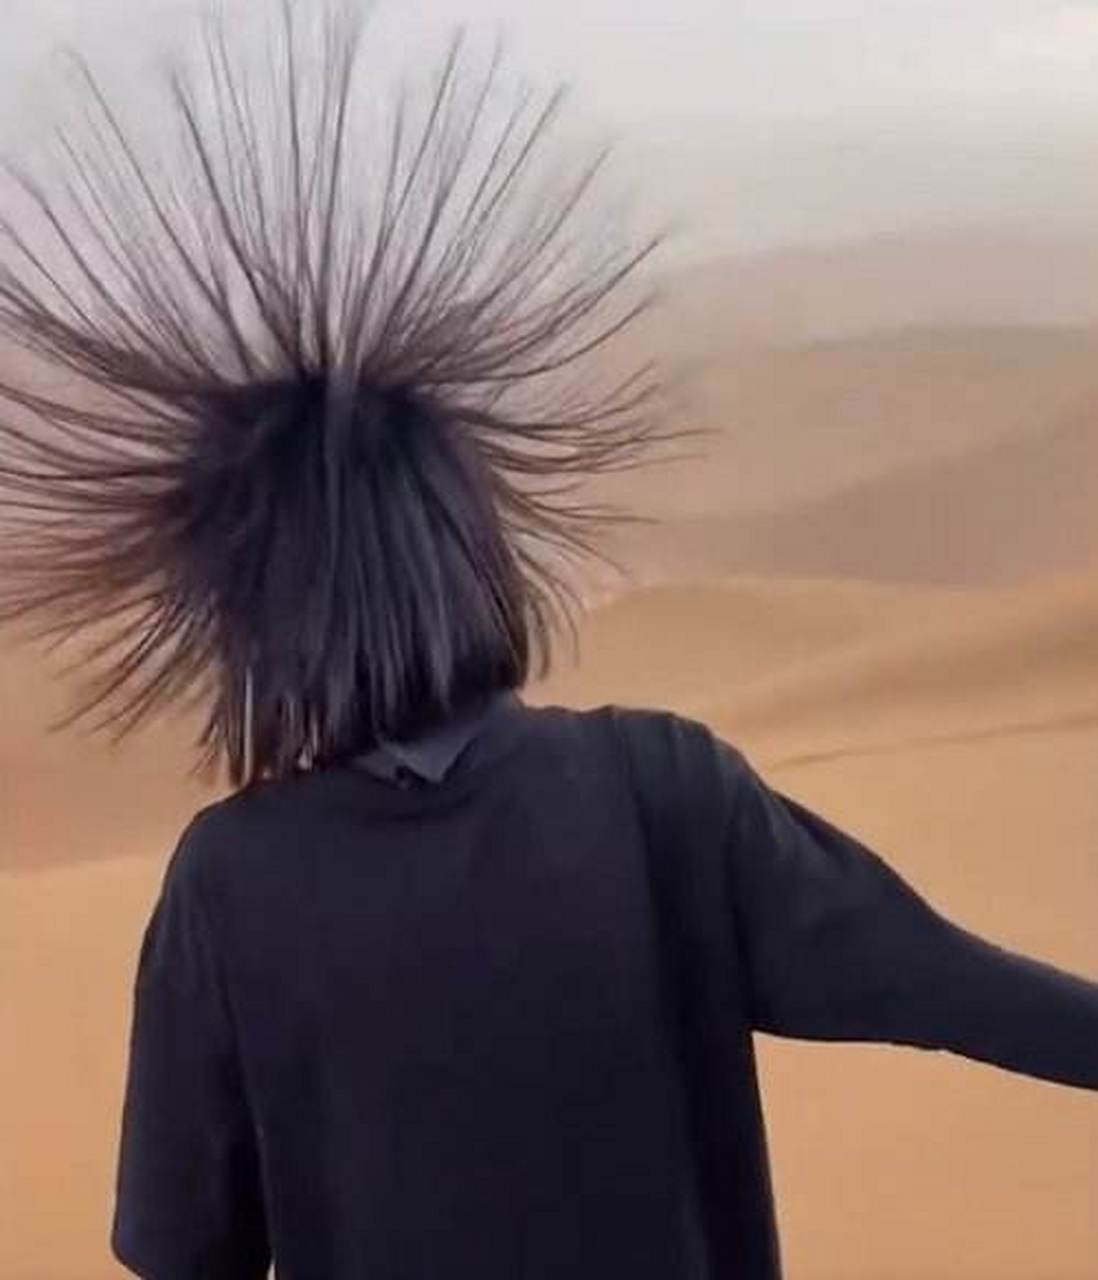 8月15日,新疆吐鲁番有游客在沙漠下山时头发竖立,兰州大学大气科学